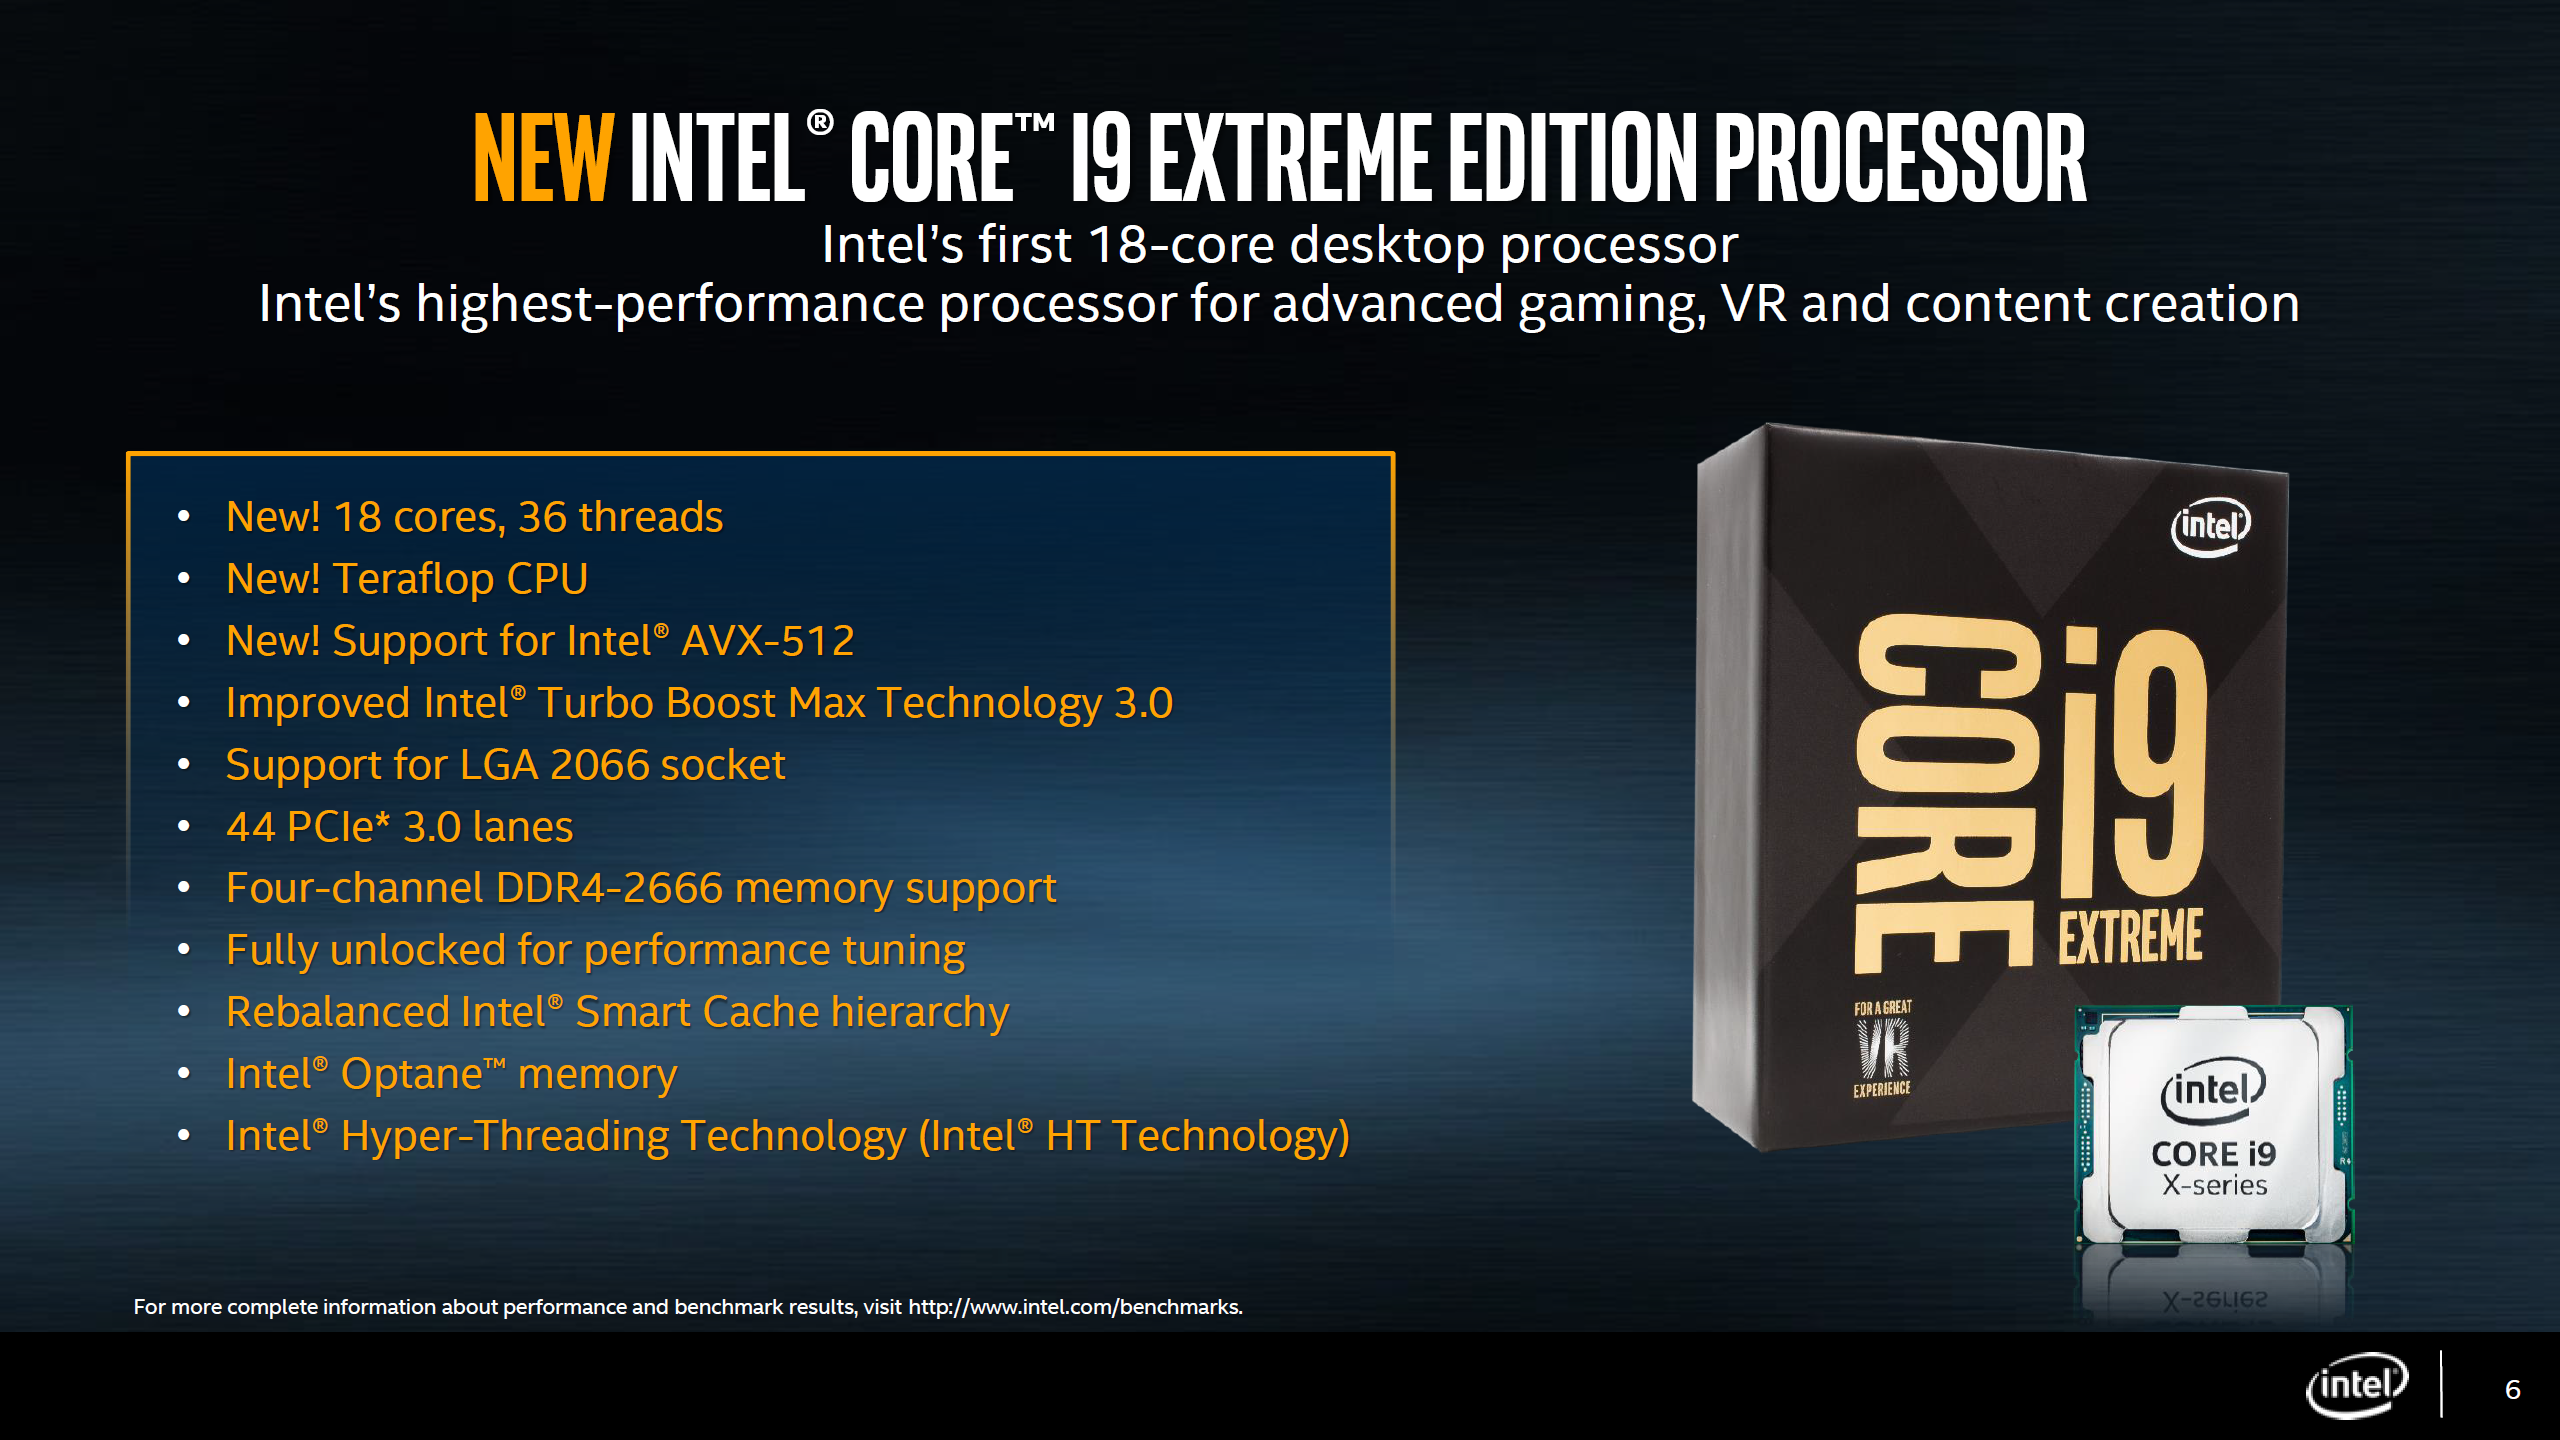 على ما يبدو أن وحش AMD القادم جعل إنتل تسرع في وحش أخر اكثر قوة وهو Core i9-7980XE لتتربع على عرش أقوى المعالجات المركزية المكتبية من الفئة العليا أو ما ...